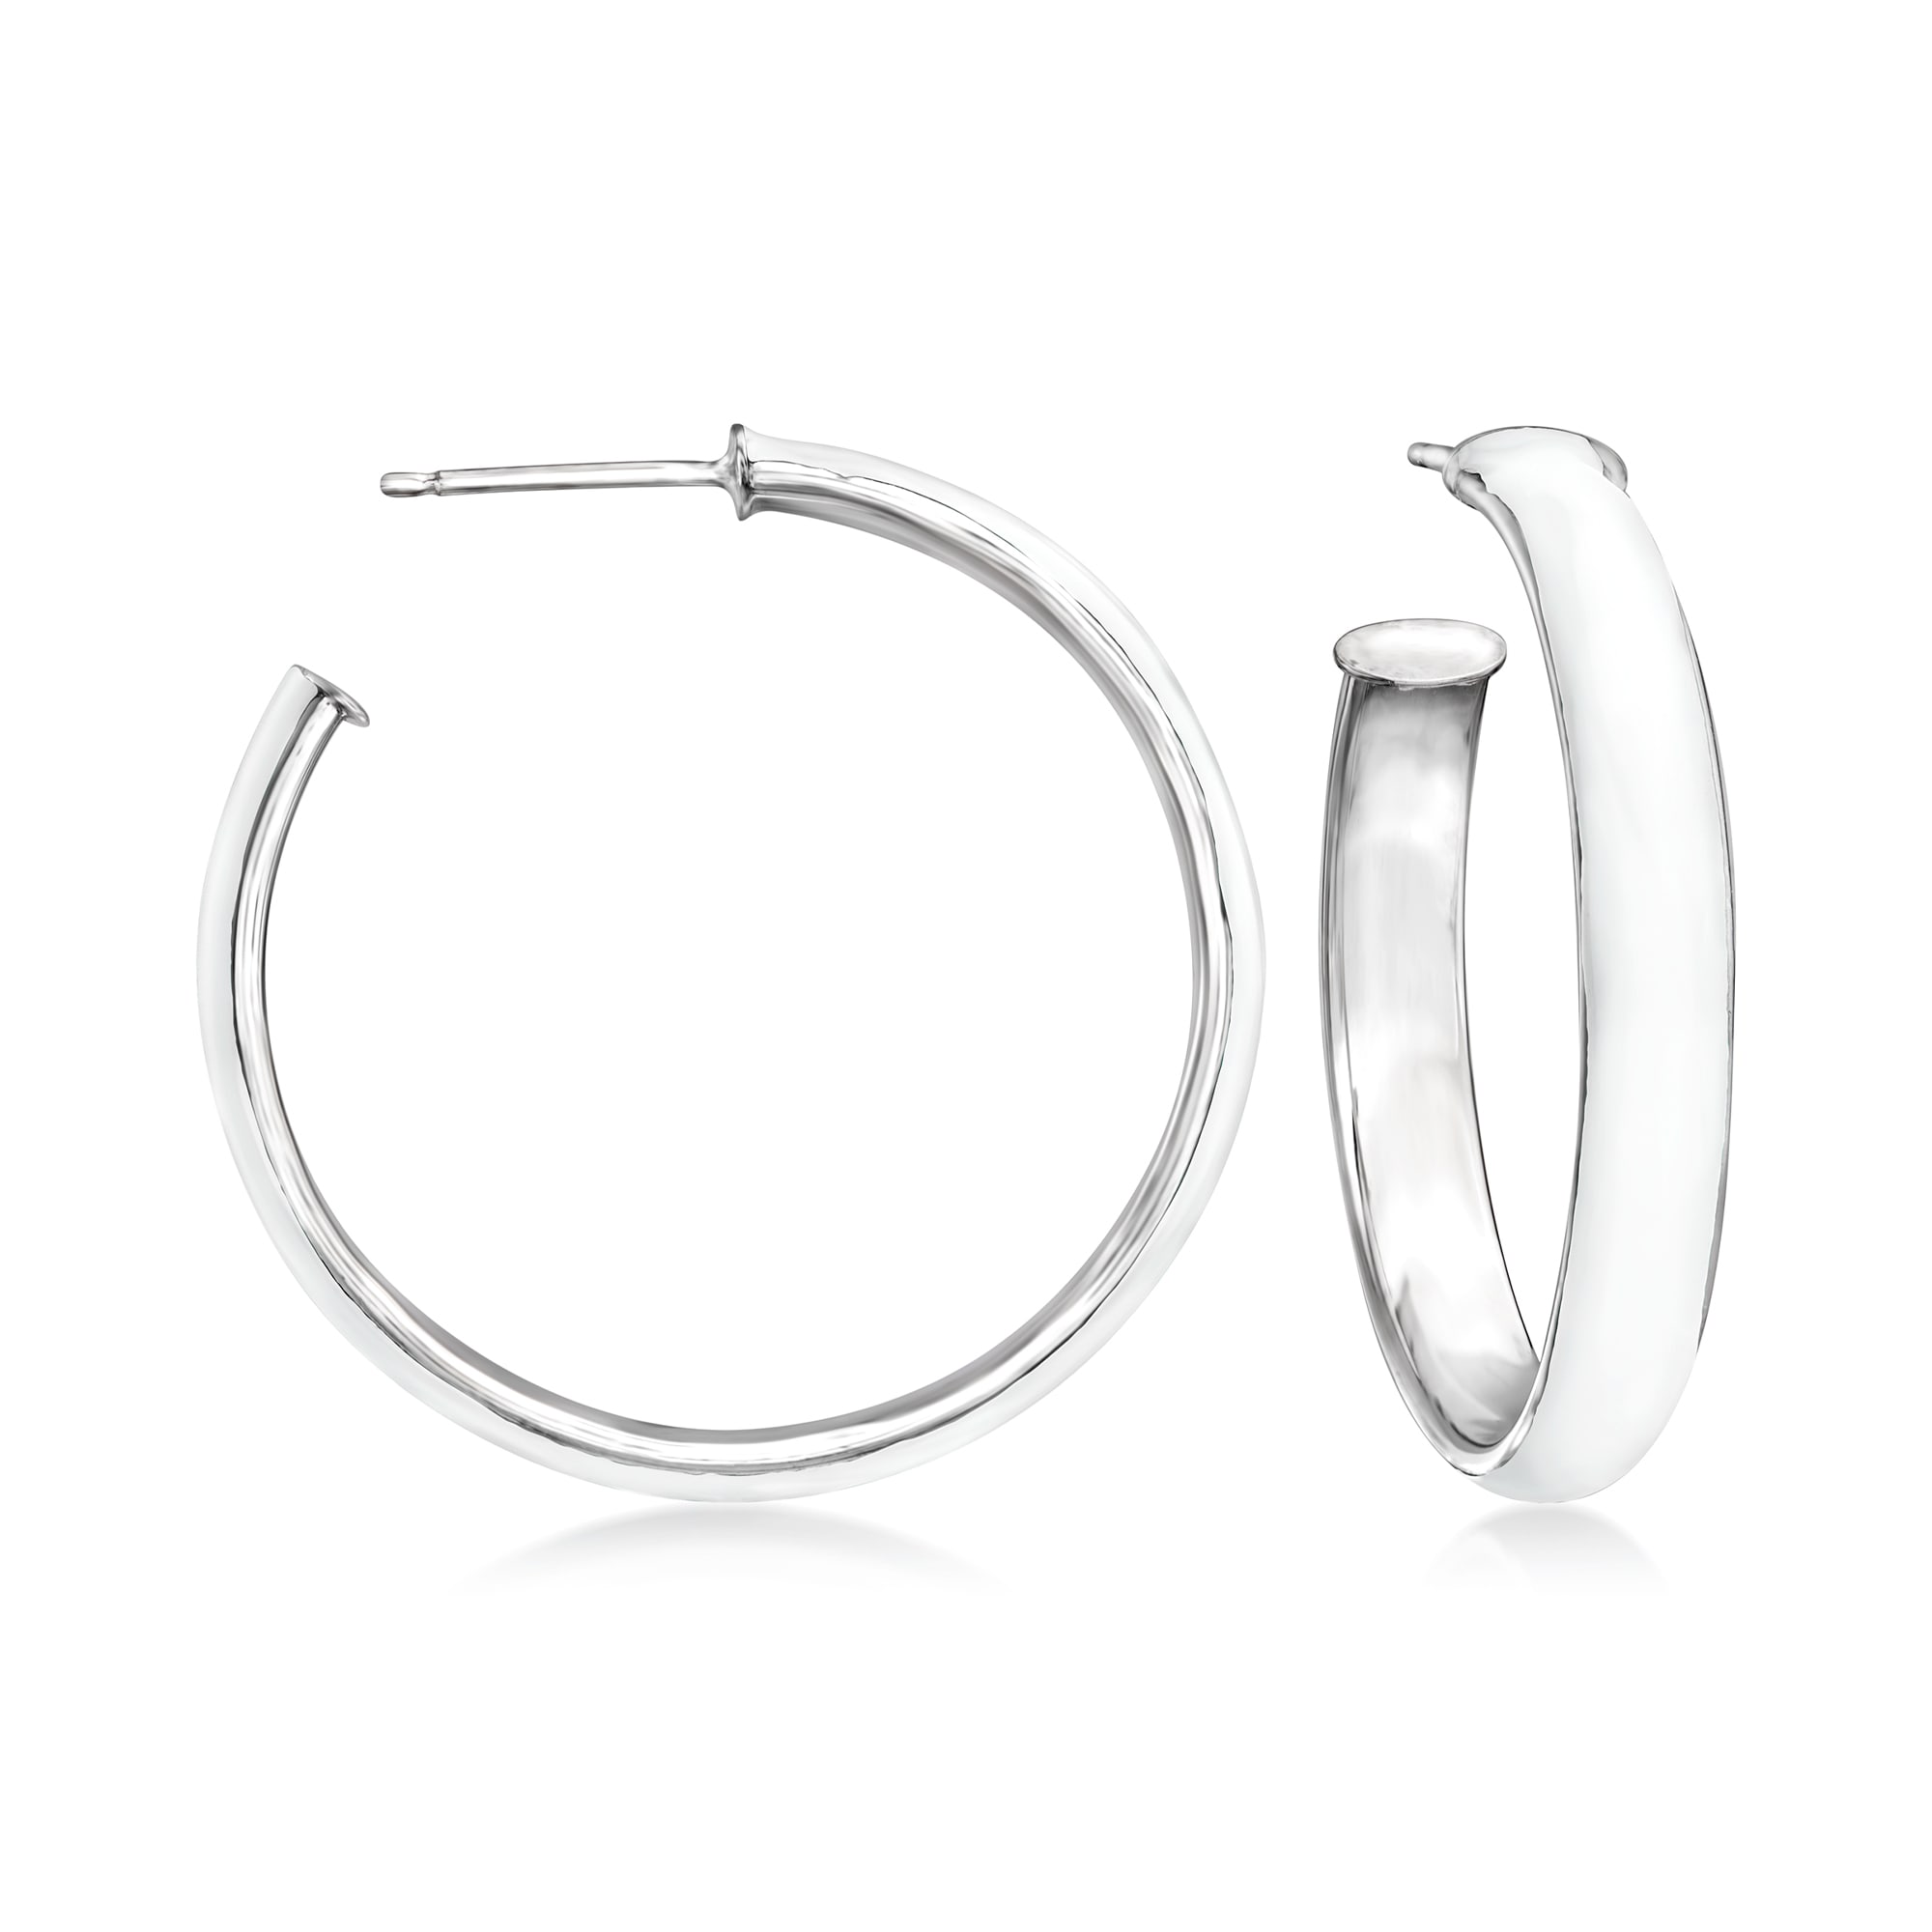 Italian White Enamel Hoop Earrings in Sterling Silver. 1 1/4